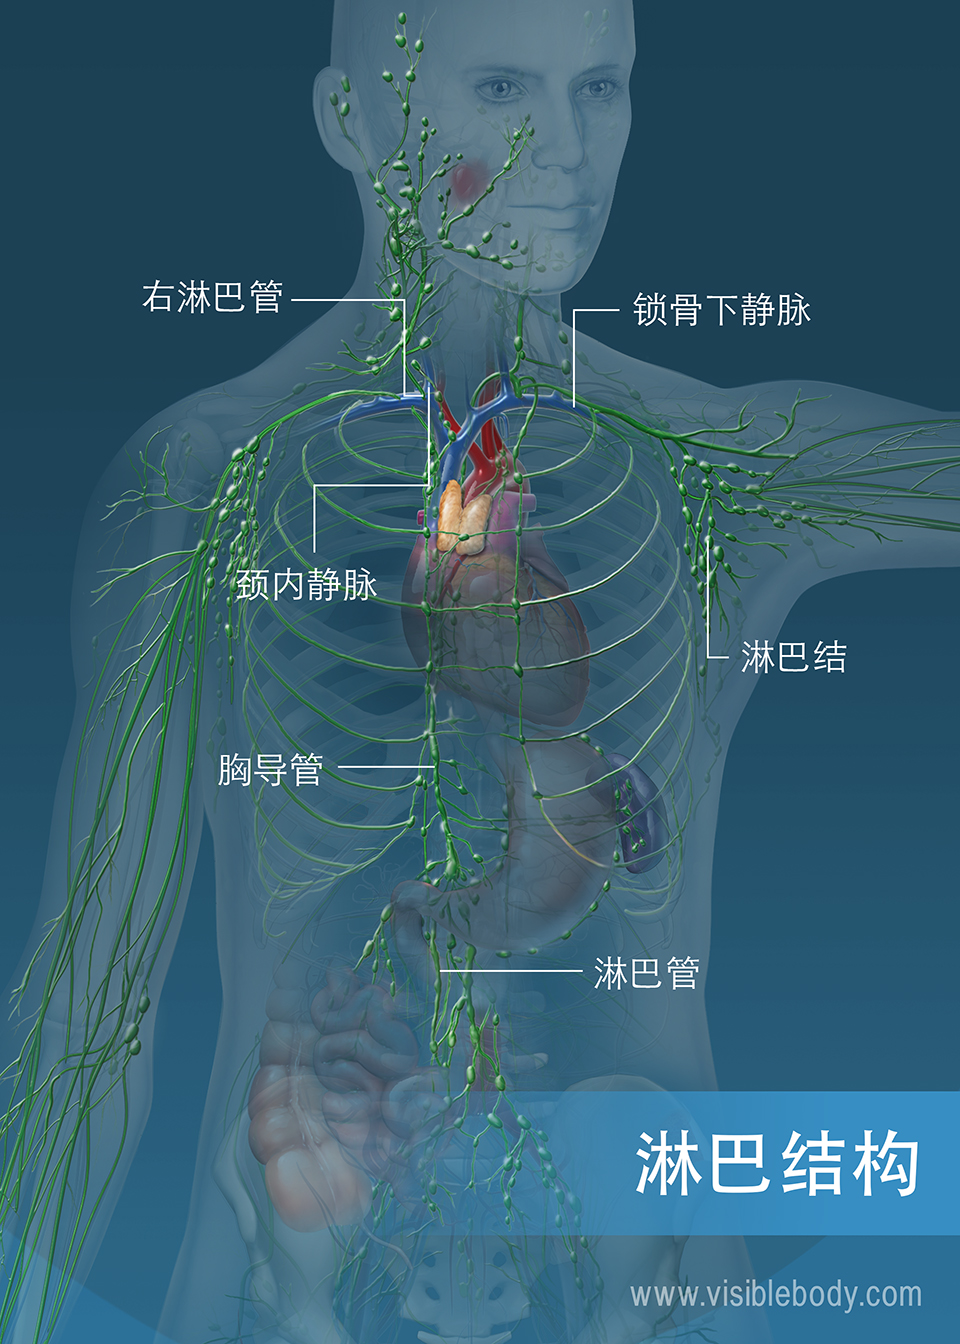 躯干和手臂的淋巴管网络。 主要结构包括胸导管、右淋巴管和淋巴管。 